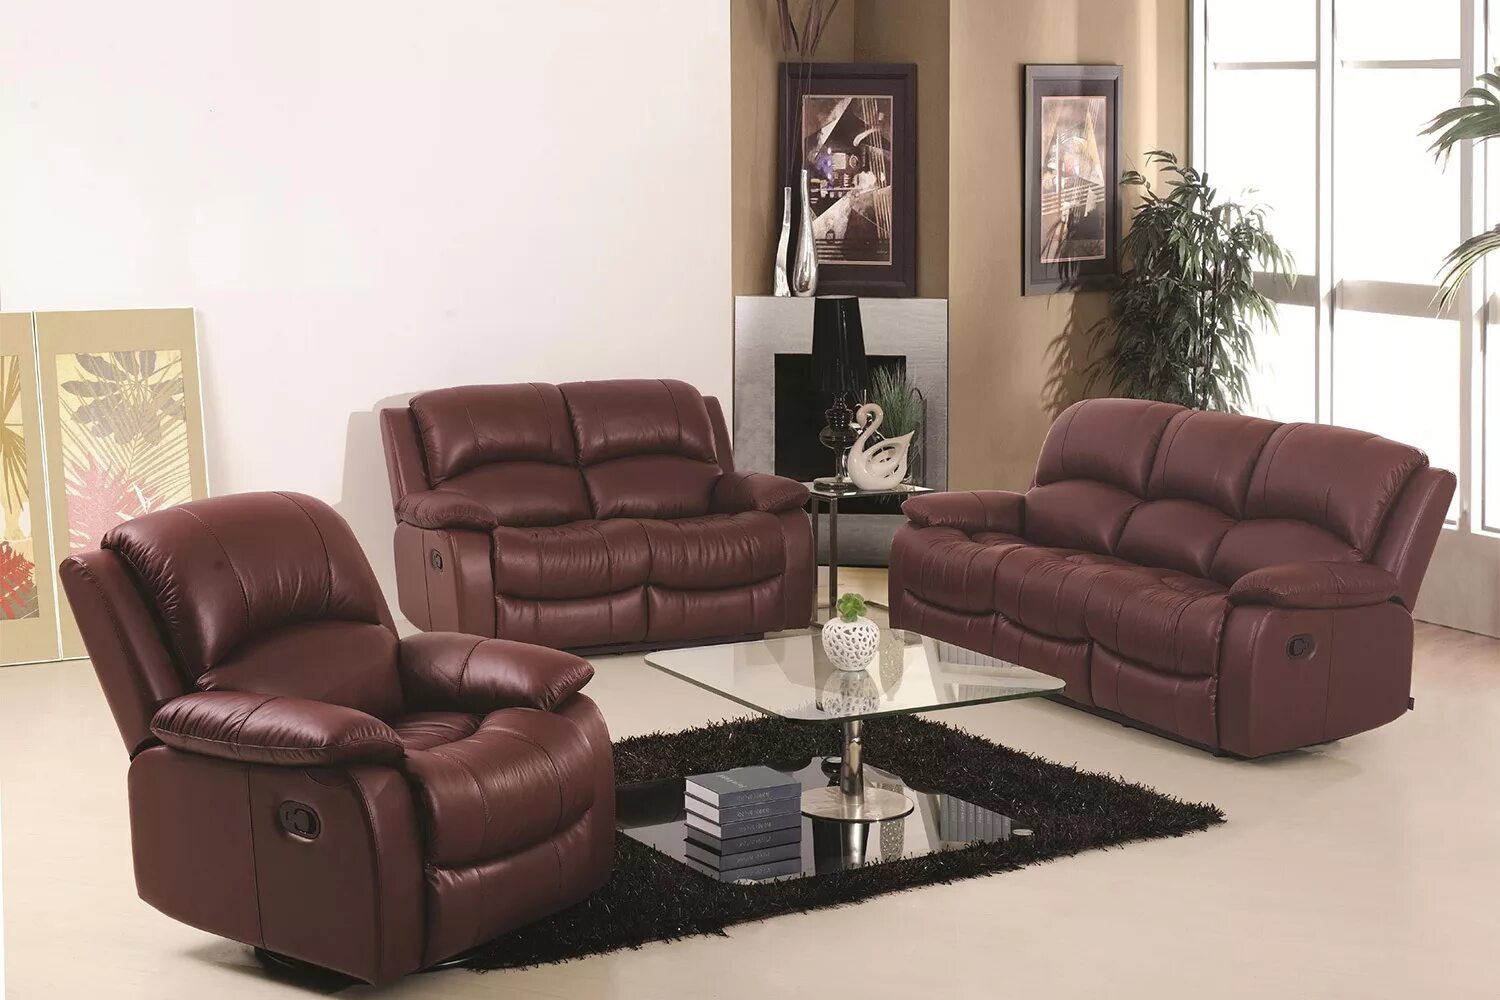 Современные диваны кресла. Кожаная мягкая мебель. Кожаная мебель в интерьере. Коричневый кожаный диван. Кожаный диван в интерьере.